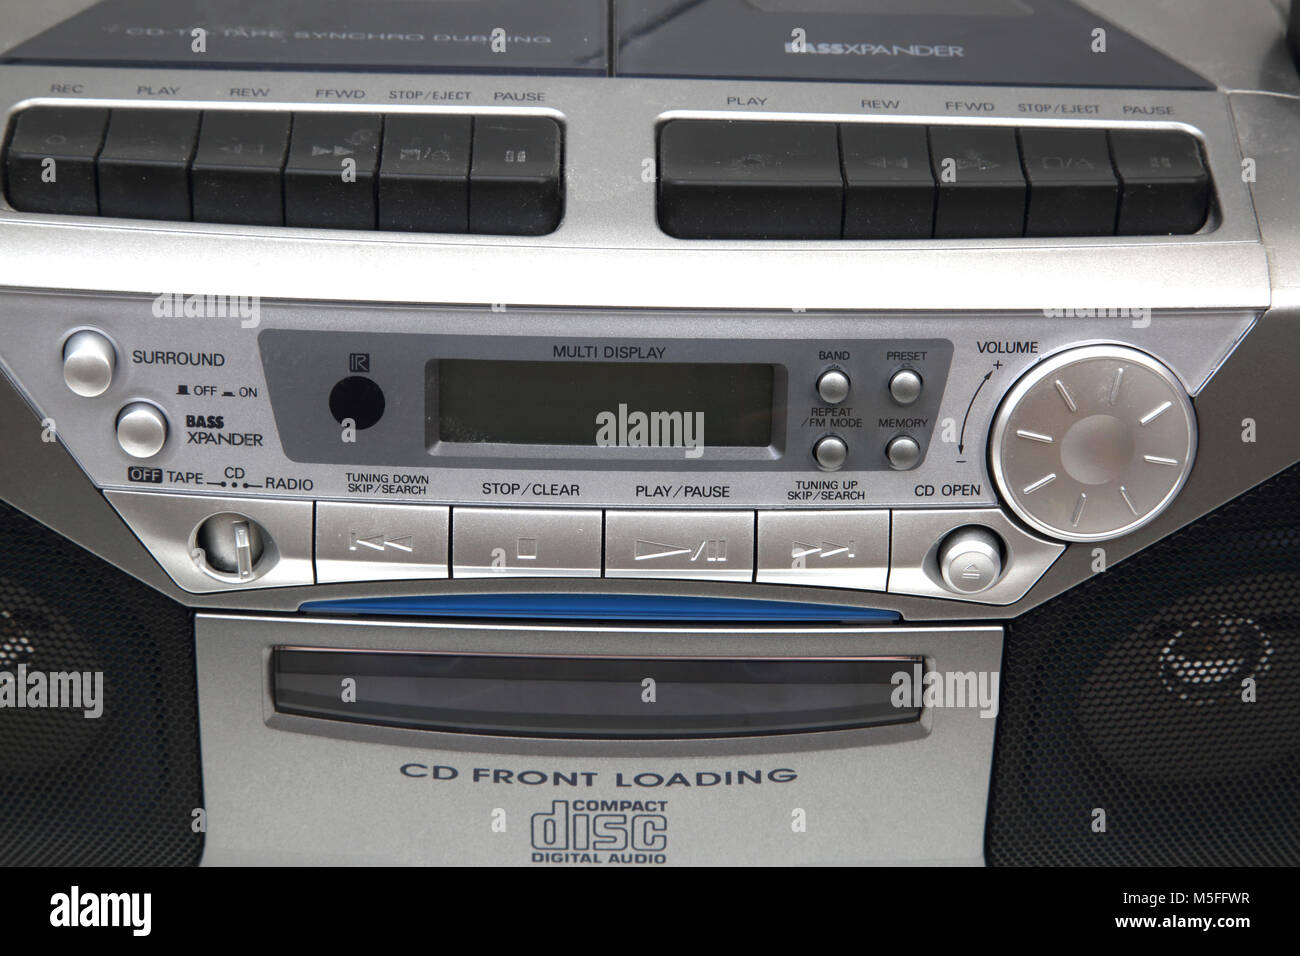 Sanyo Cd Radio Cassette Player | empaquetotal.com